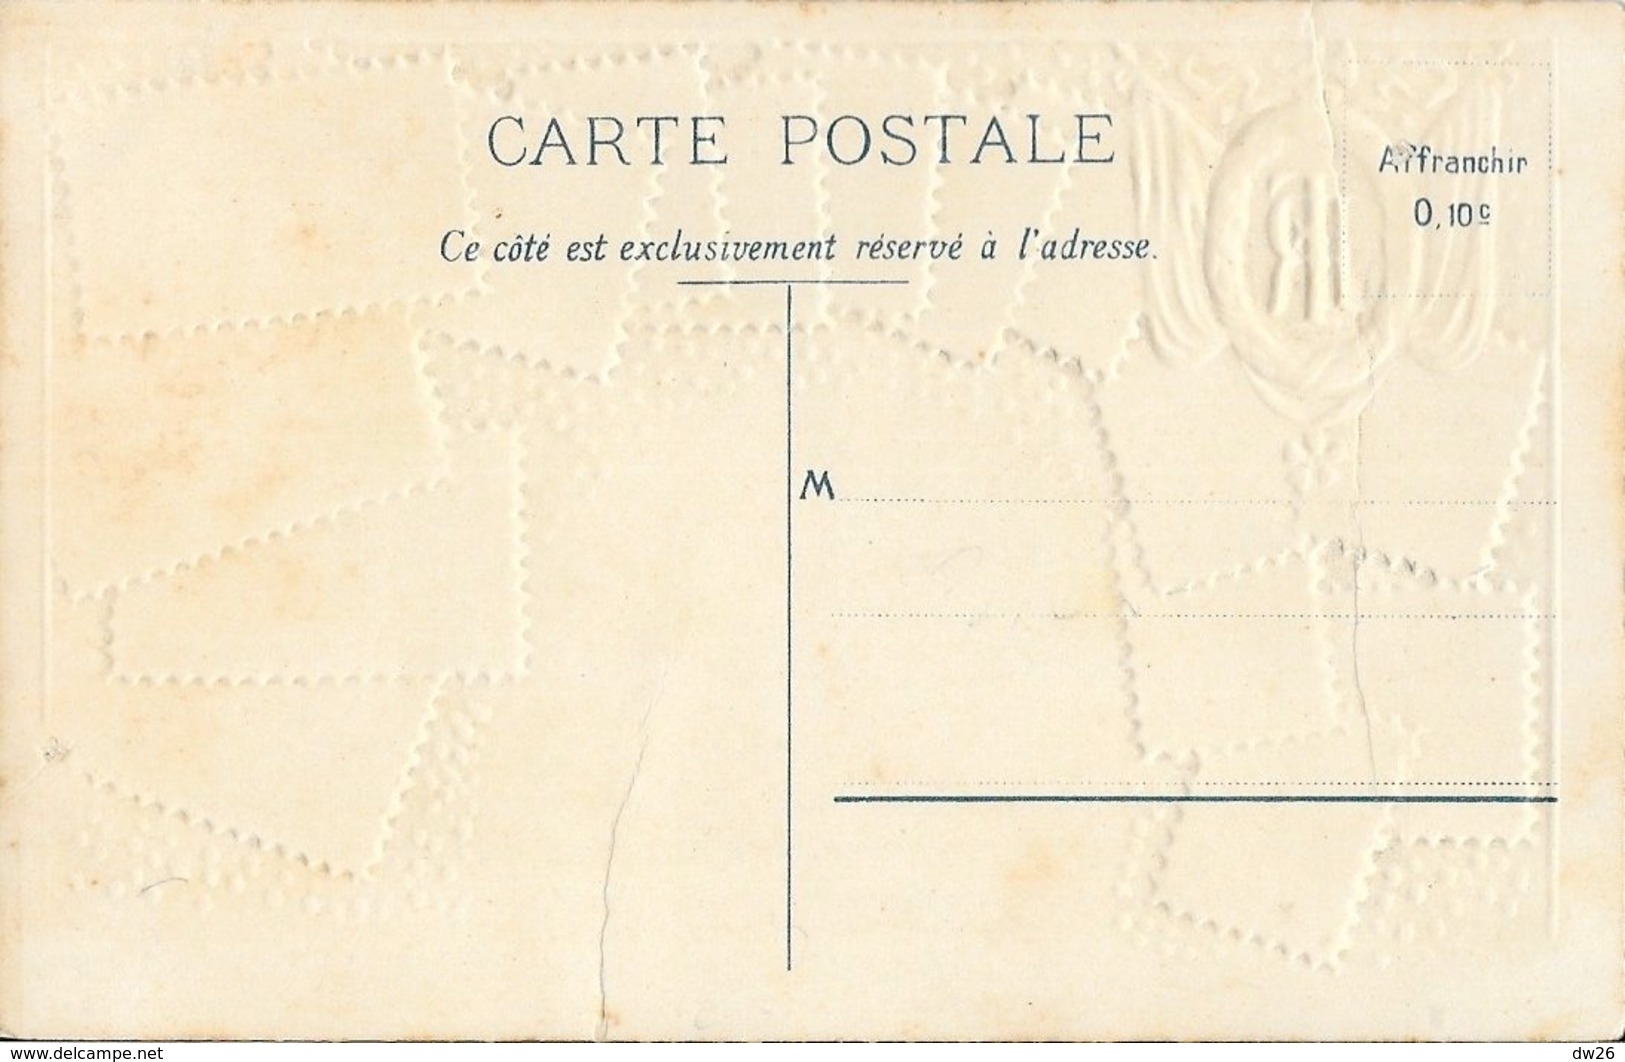 Carte Philatélique D.R.G.M. Non Circulée: Souvenir De France, République Française 1905 - Briefmarken (Abbildungen)